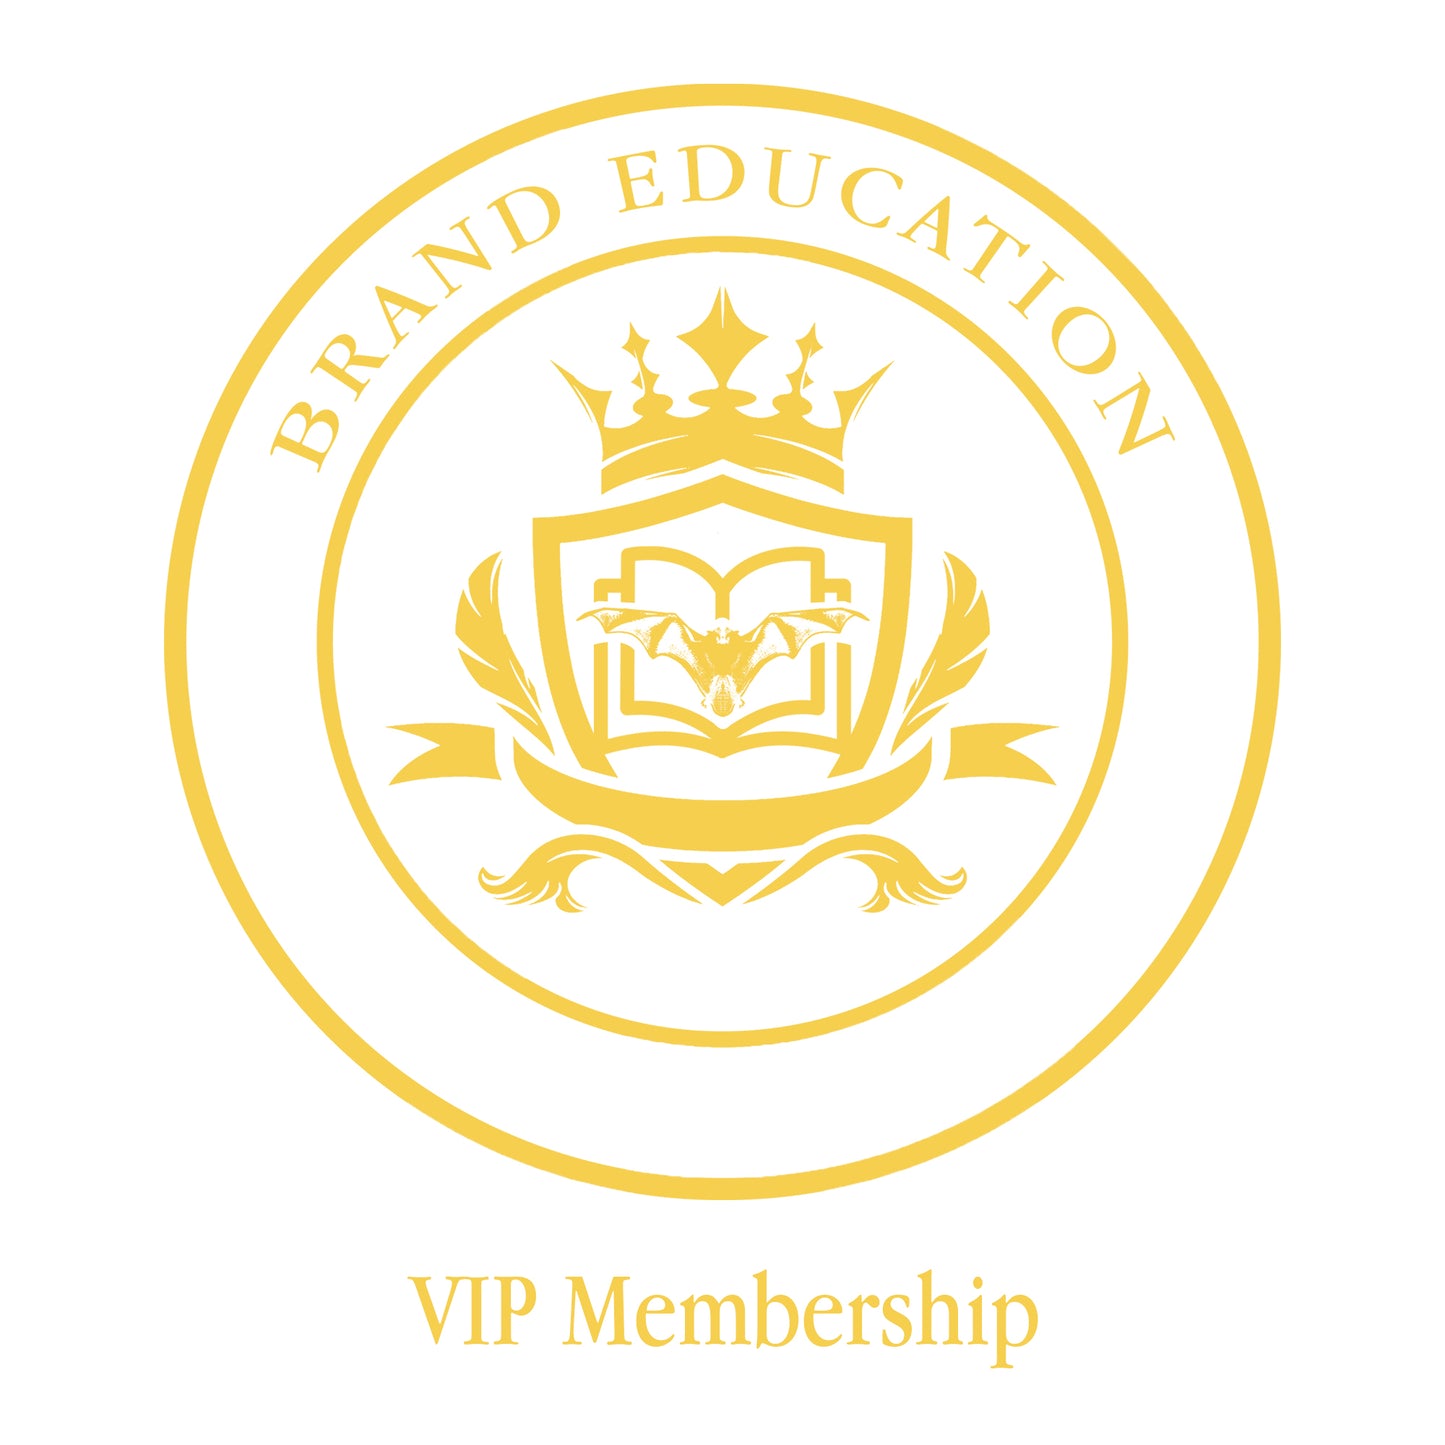 Brand EDU Academy VIP Membership